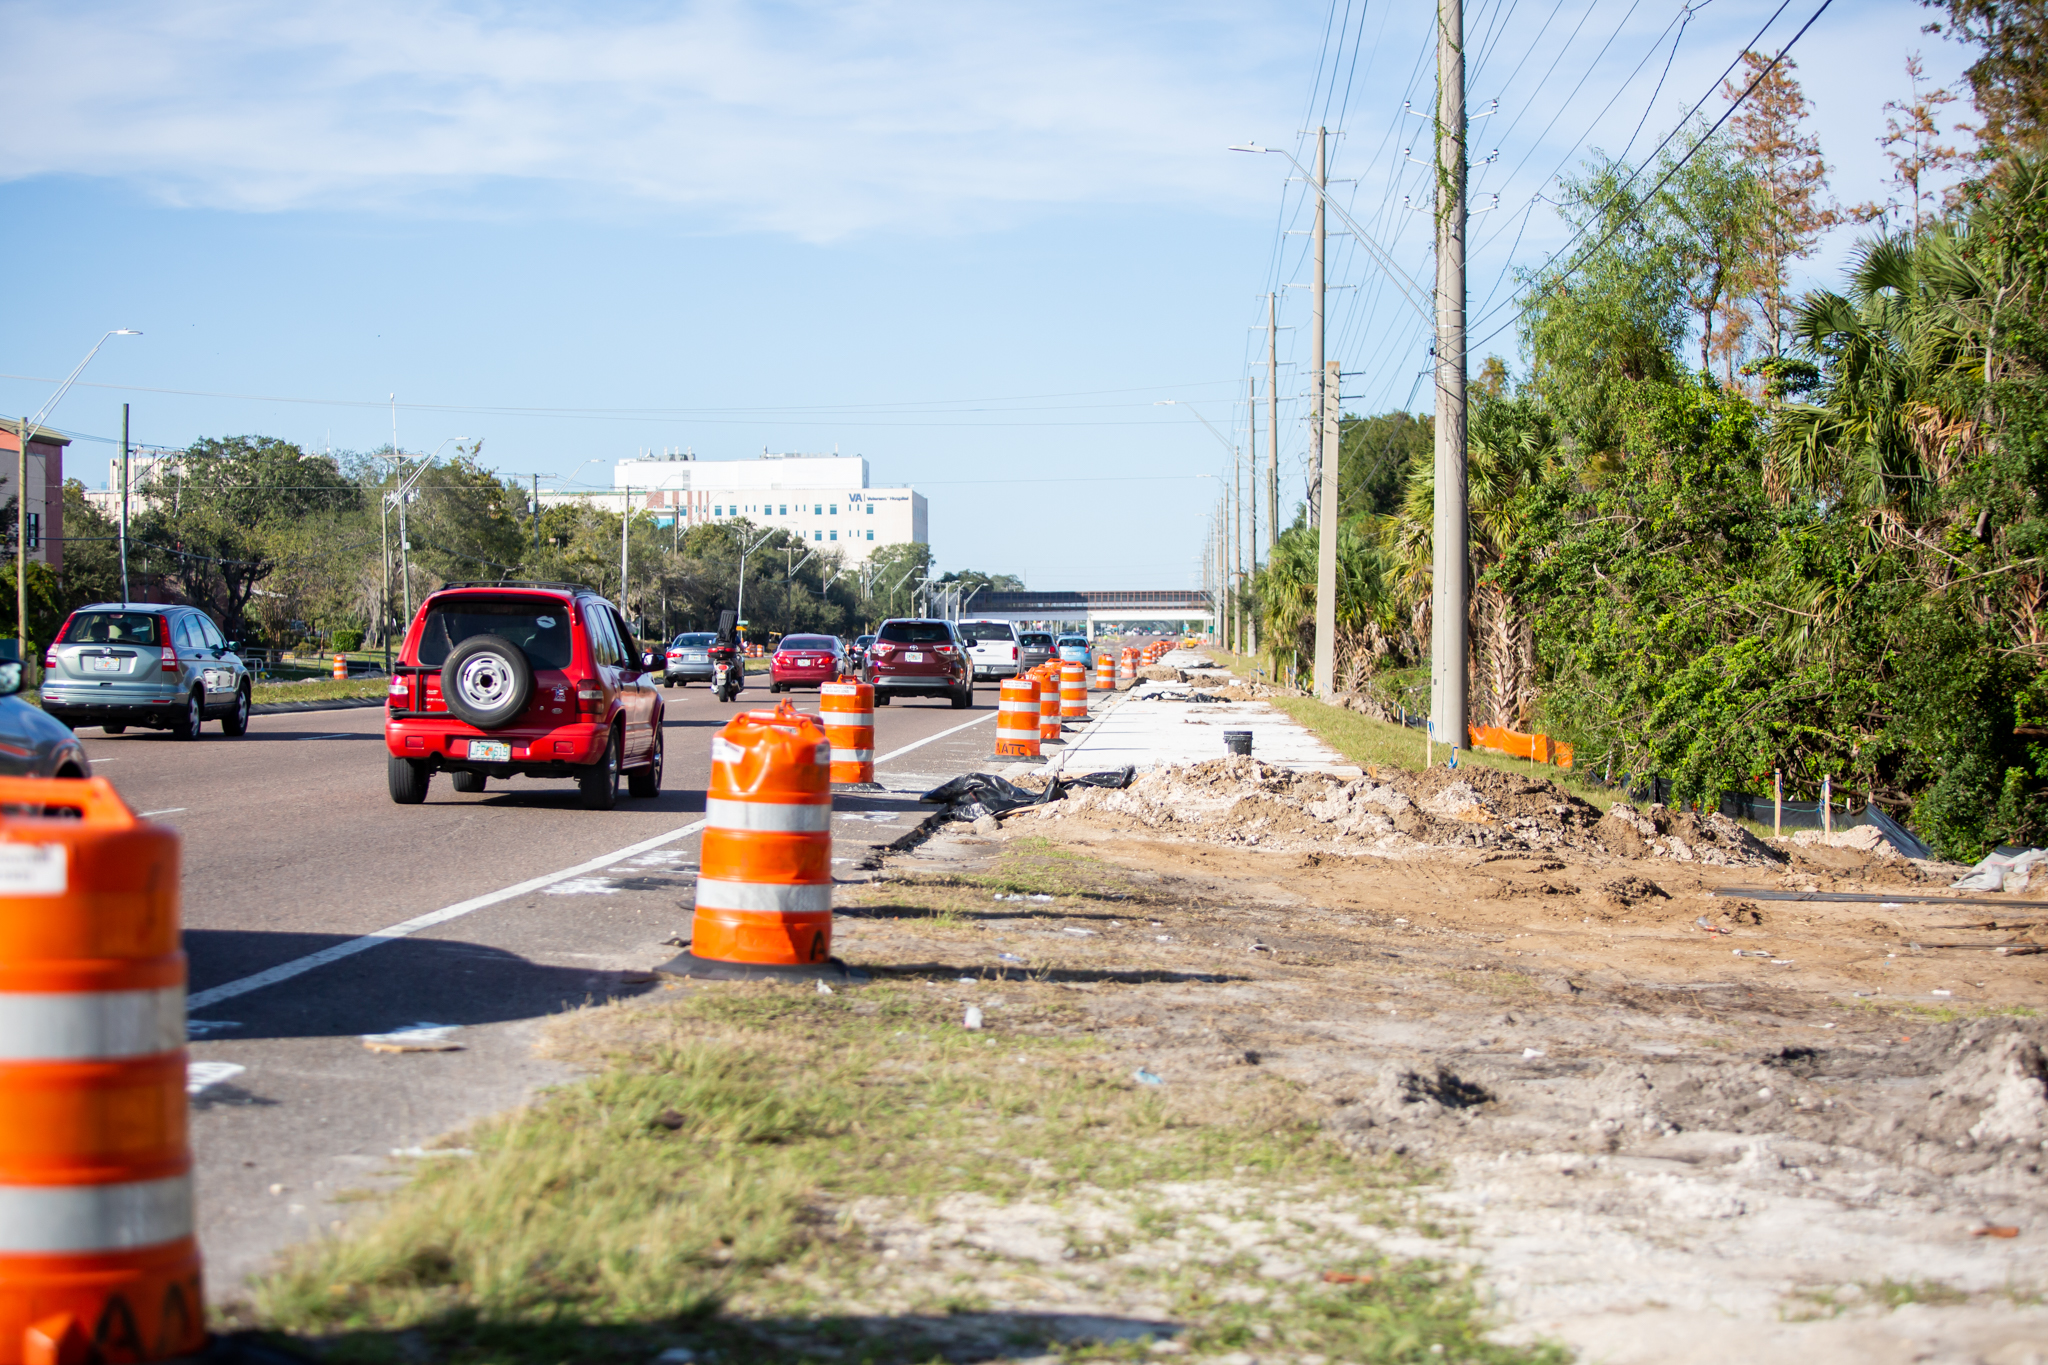 Road improvements under construction around campus’ perimeter